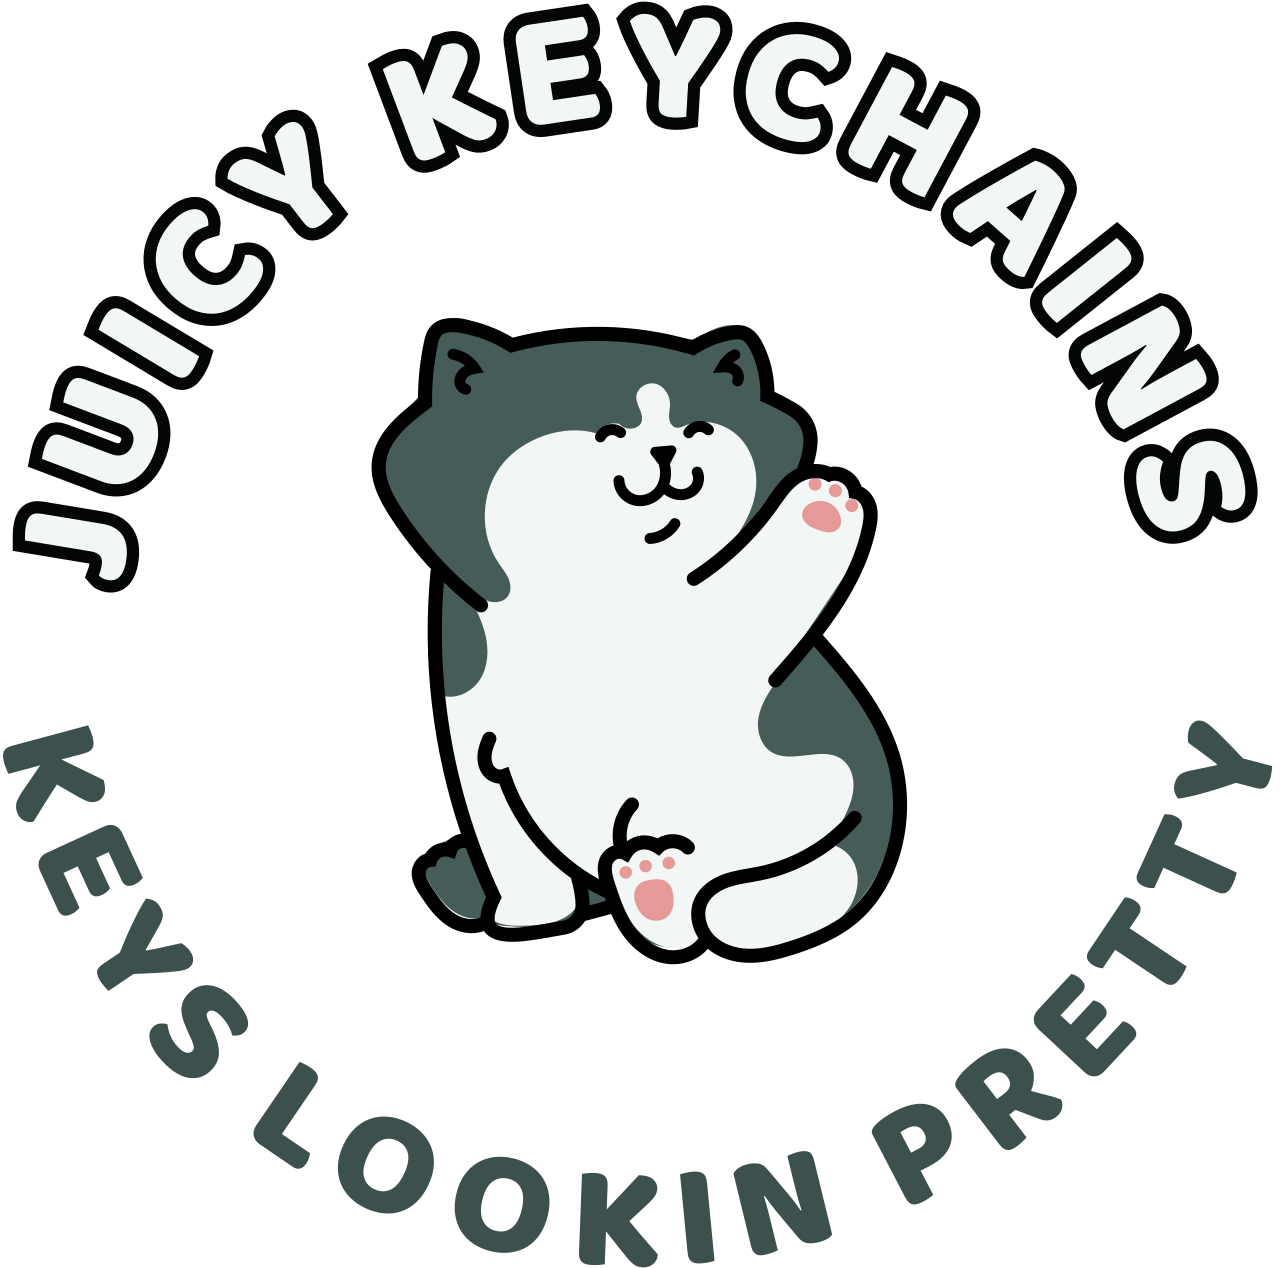 JUICY KEYCHAINS 's logo